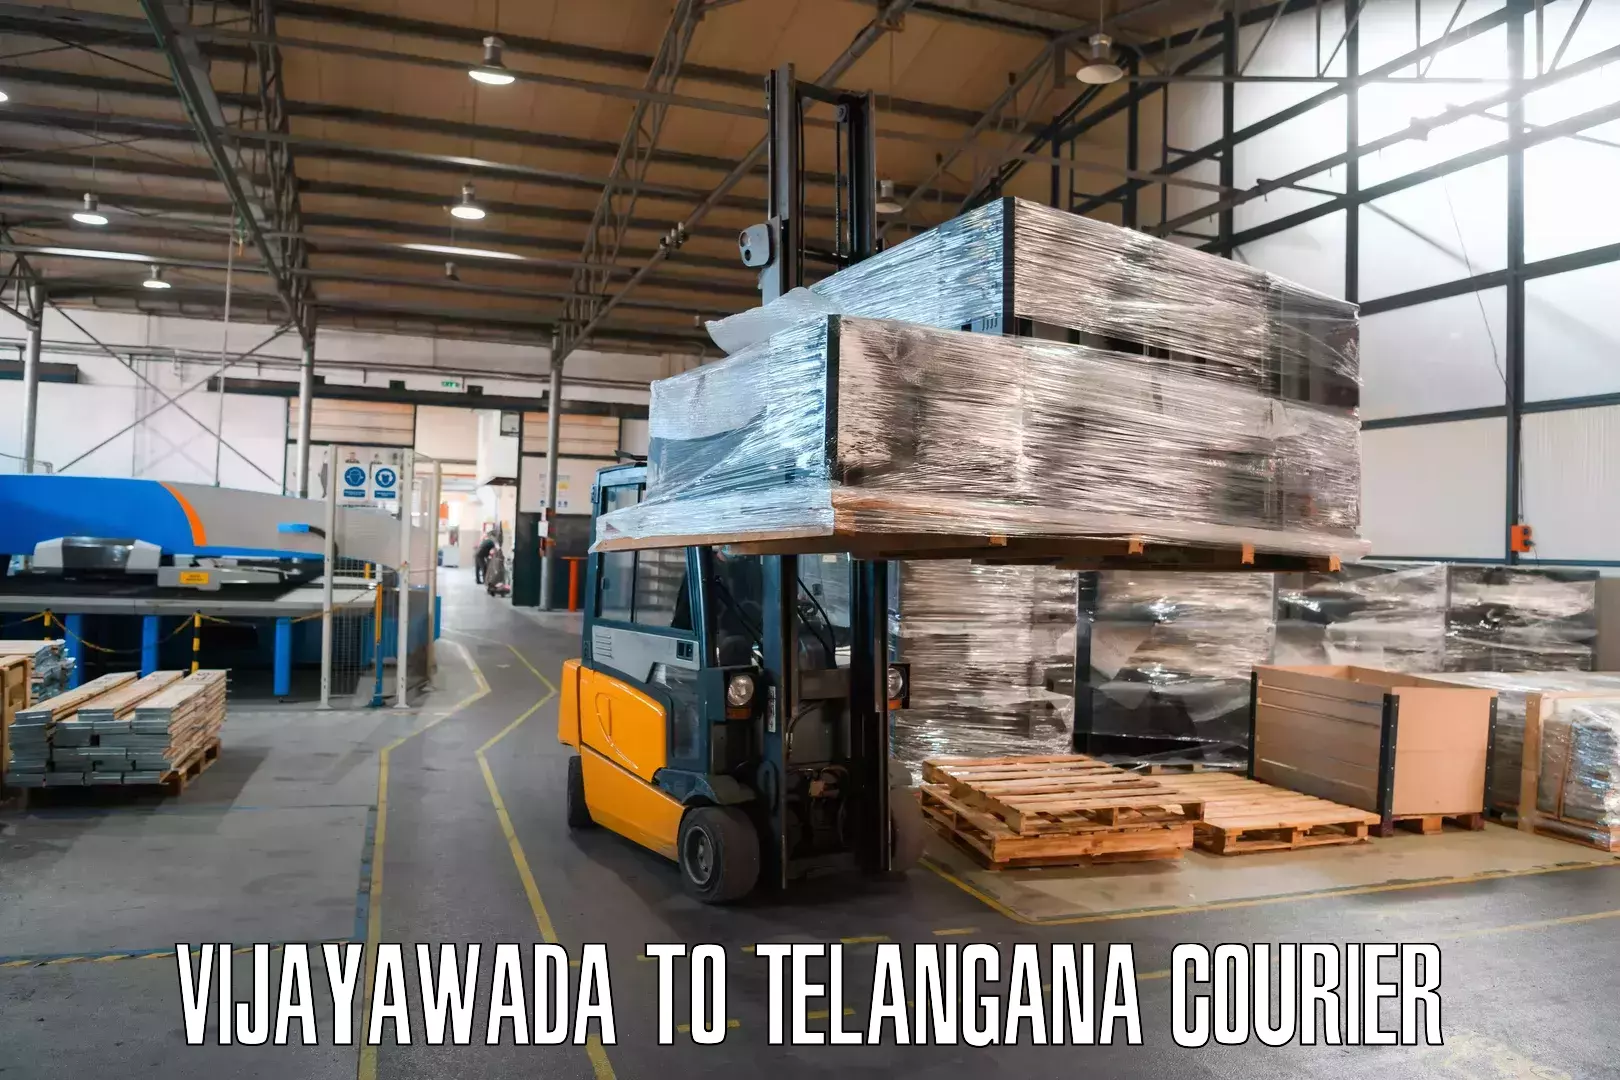 Express mail solutions Vijayawada to Telangana